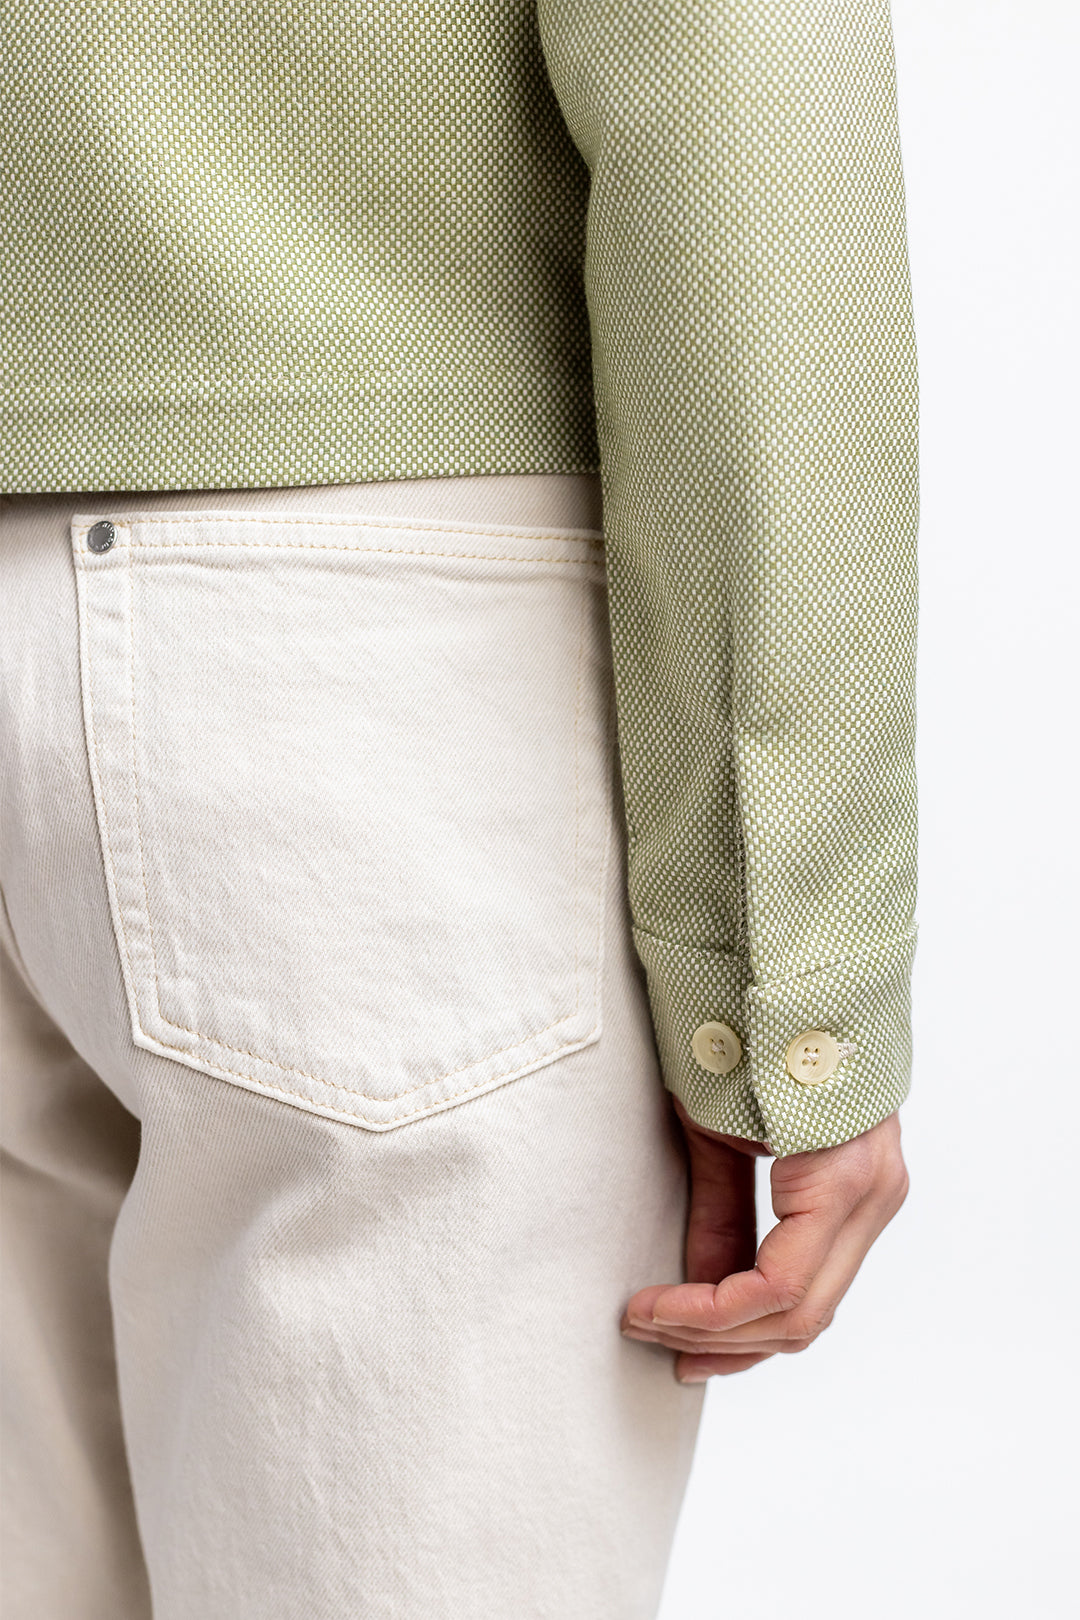 Hell-grüne, kurze Jacke aus 100% Bio-Baumwolle von Rotholz